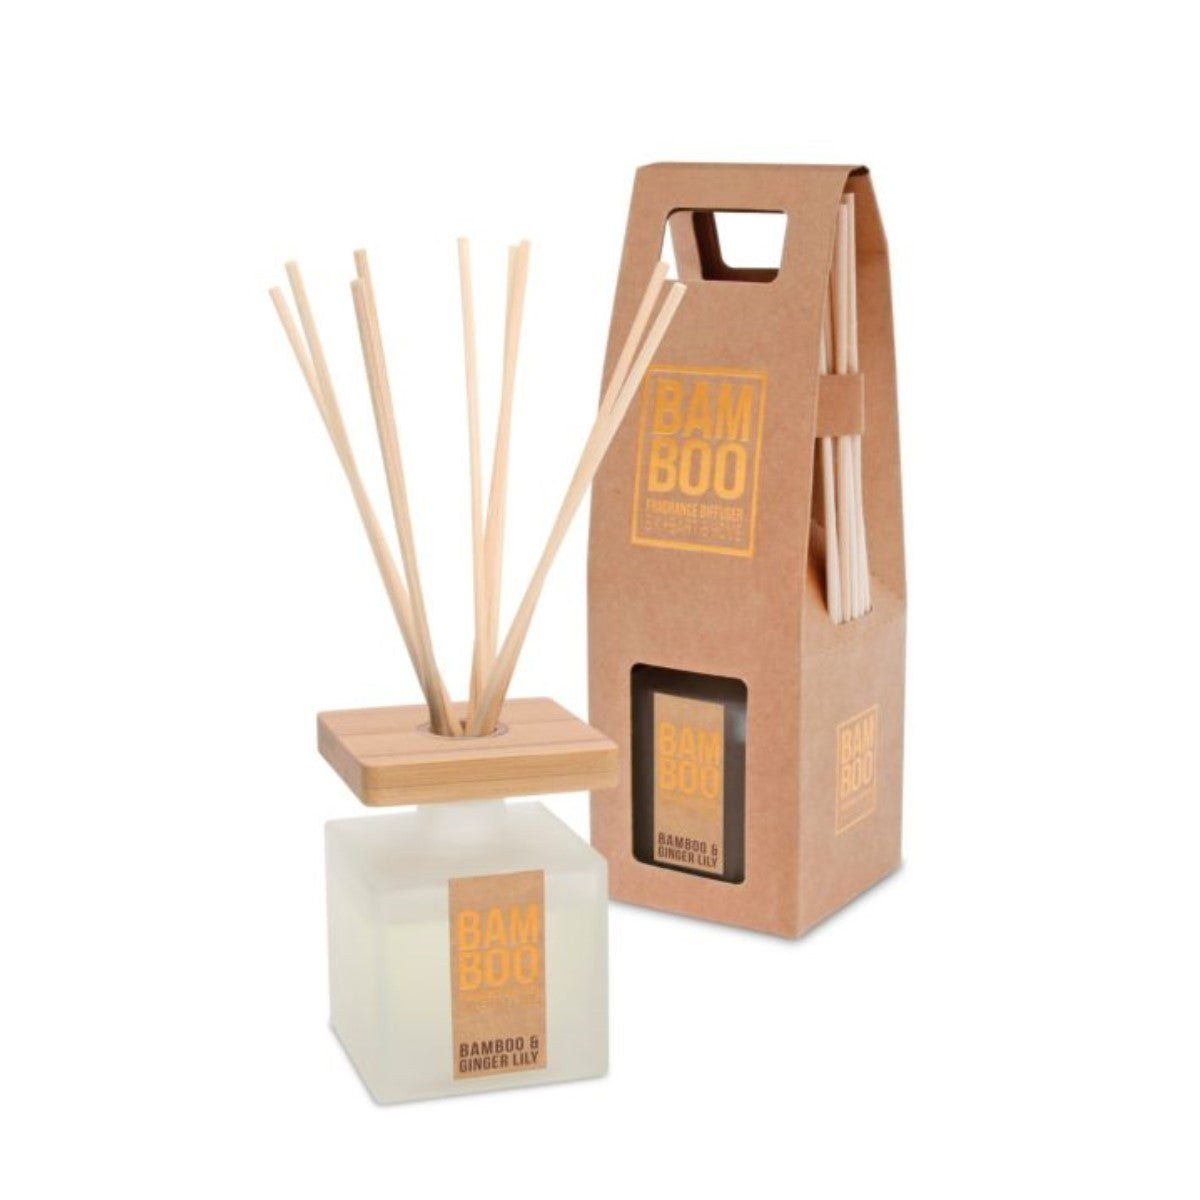 Diffusore a bastoncini Bamboo e Ginger Lily | Dolce e morbida esperienza olfattiva